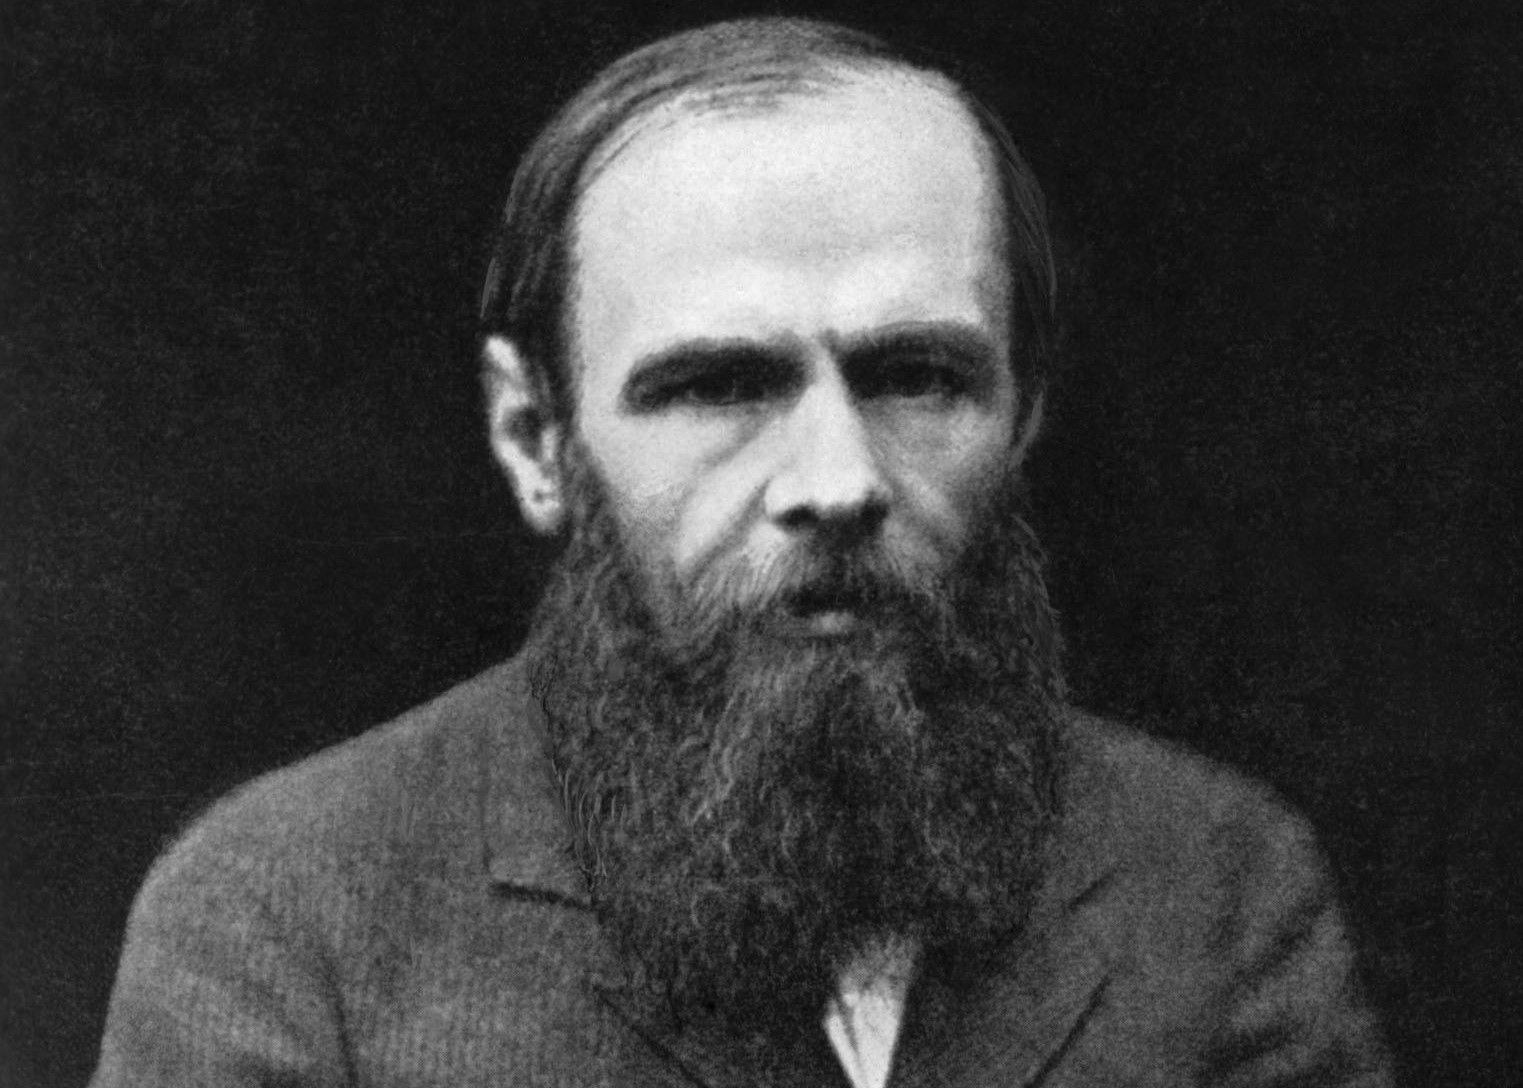 Fëdor Dostoevskij piscia, ama, resiste, implora. Sia lode ora a Jan Brokken, che è riuscito a far rivivere (documenti alla mano) il più grande scrittore di sempre